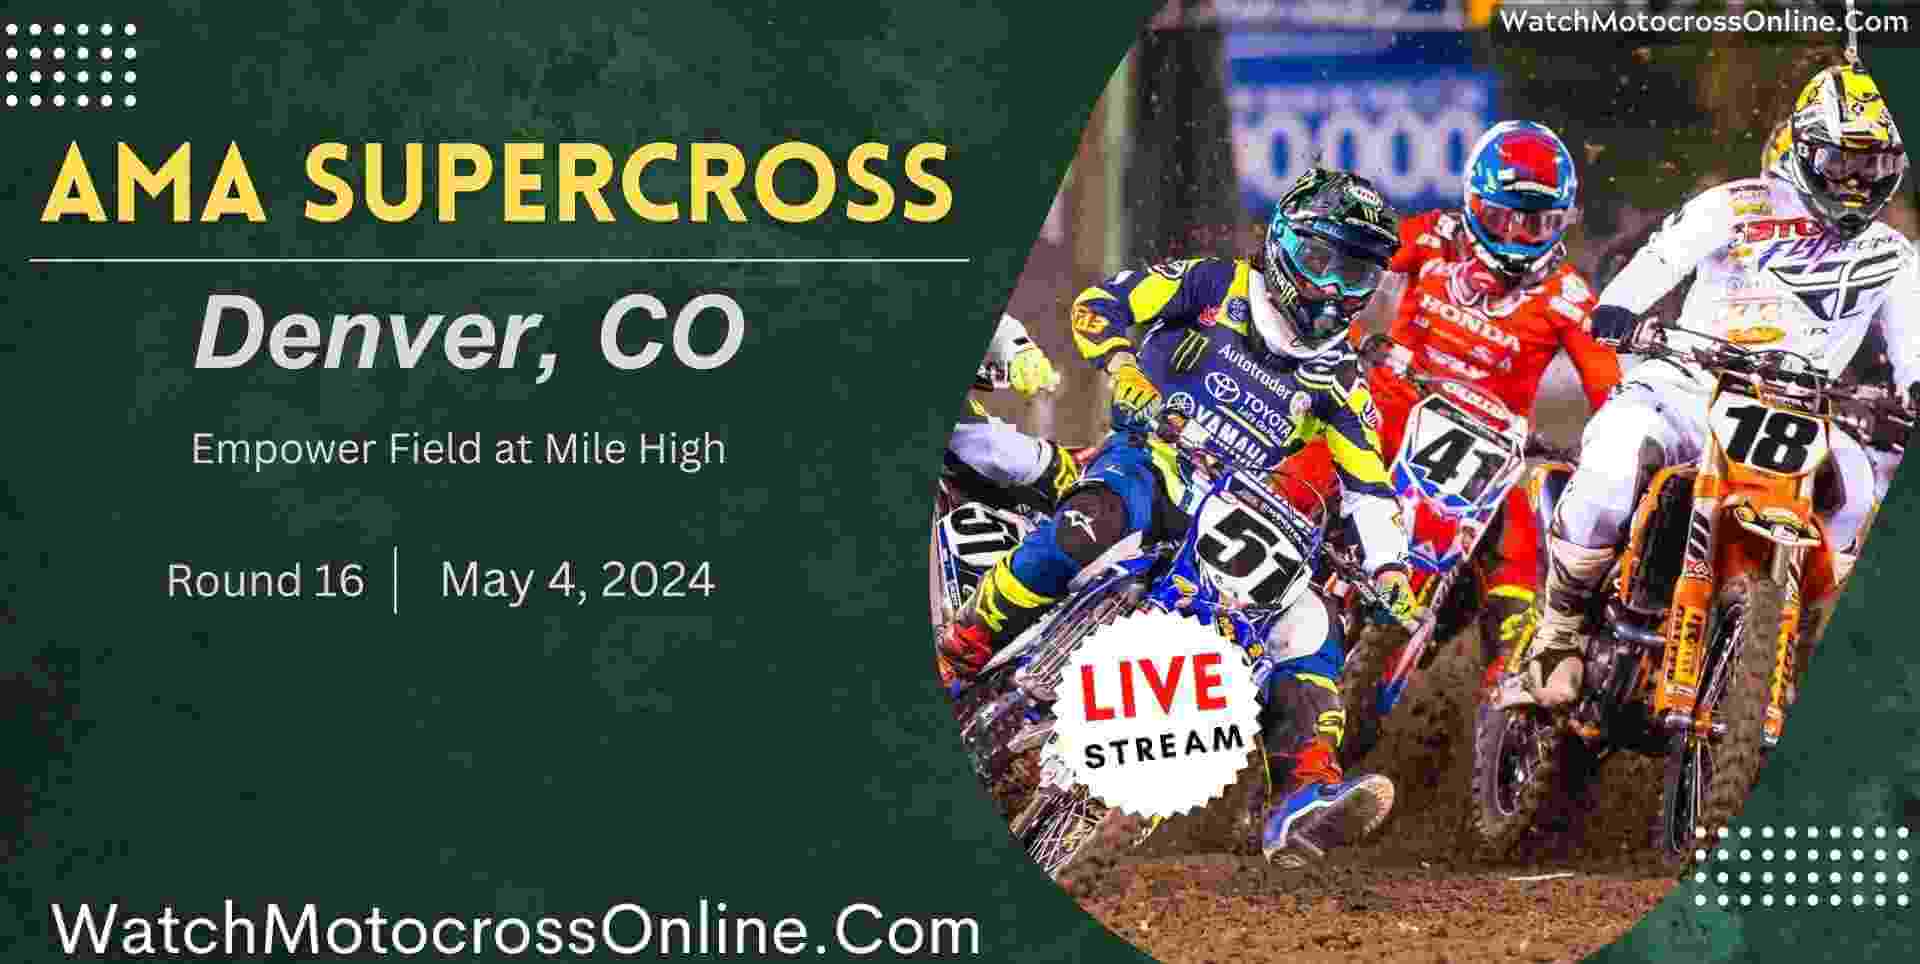 AMA Supercross Denver Live Stream 2024 Round 16